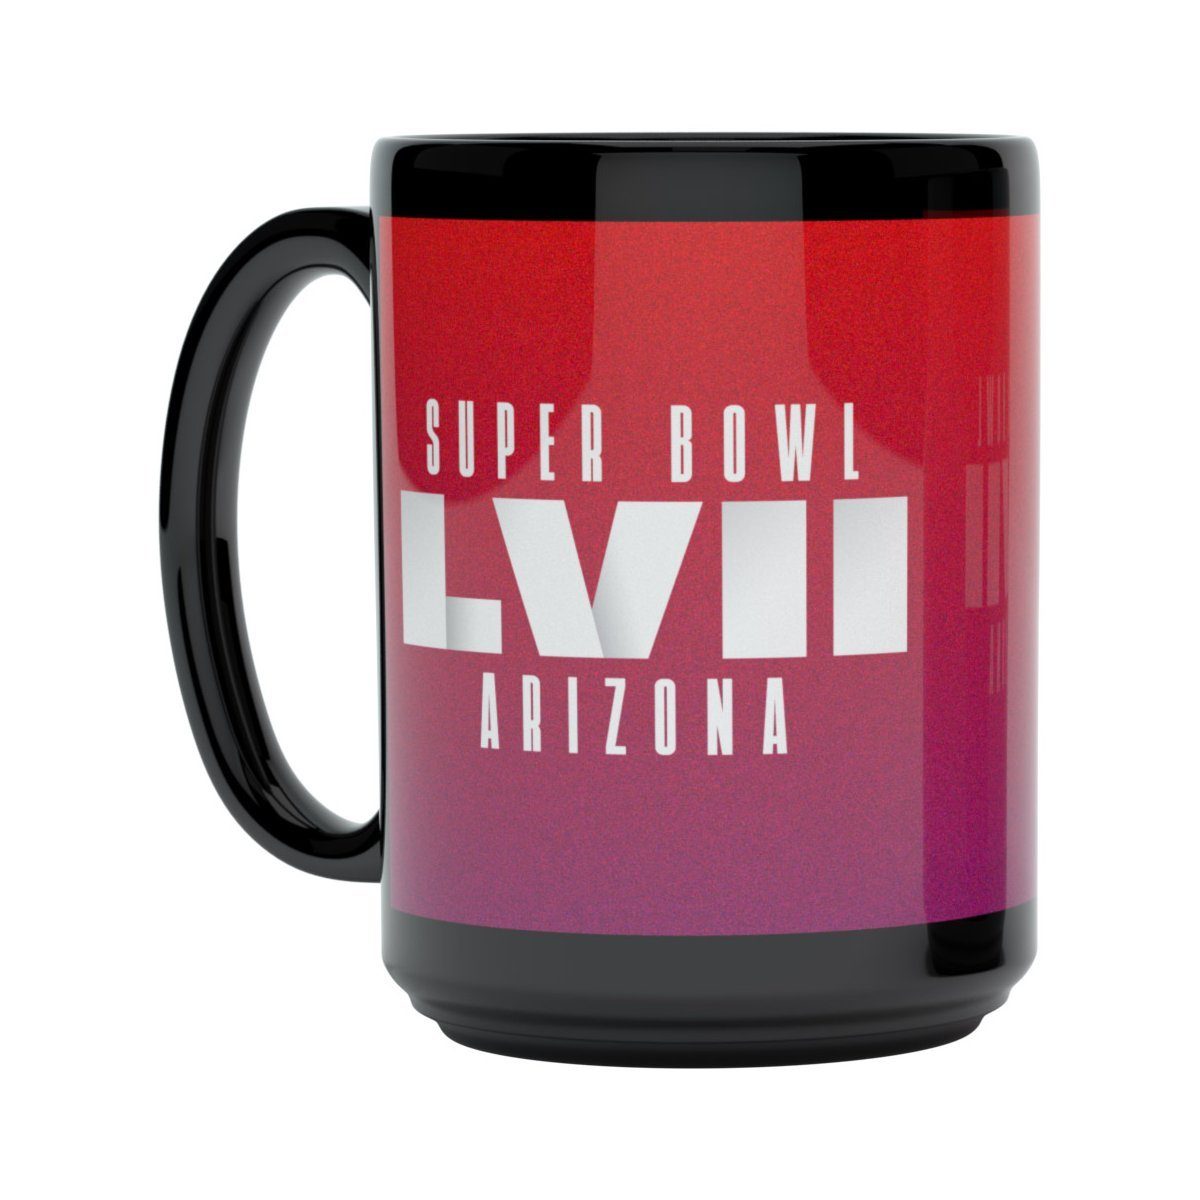 Great Branding Tasse NFL Superbowl LVII Arizona 440ml Tasse